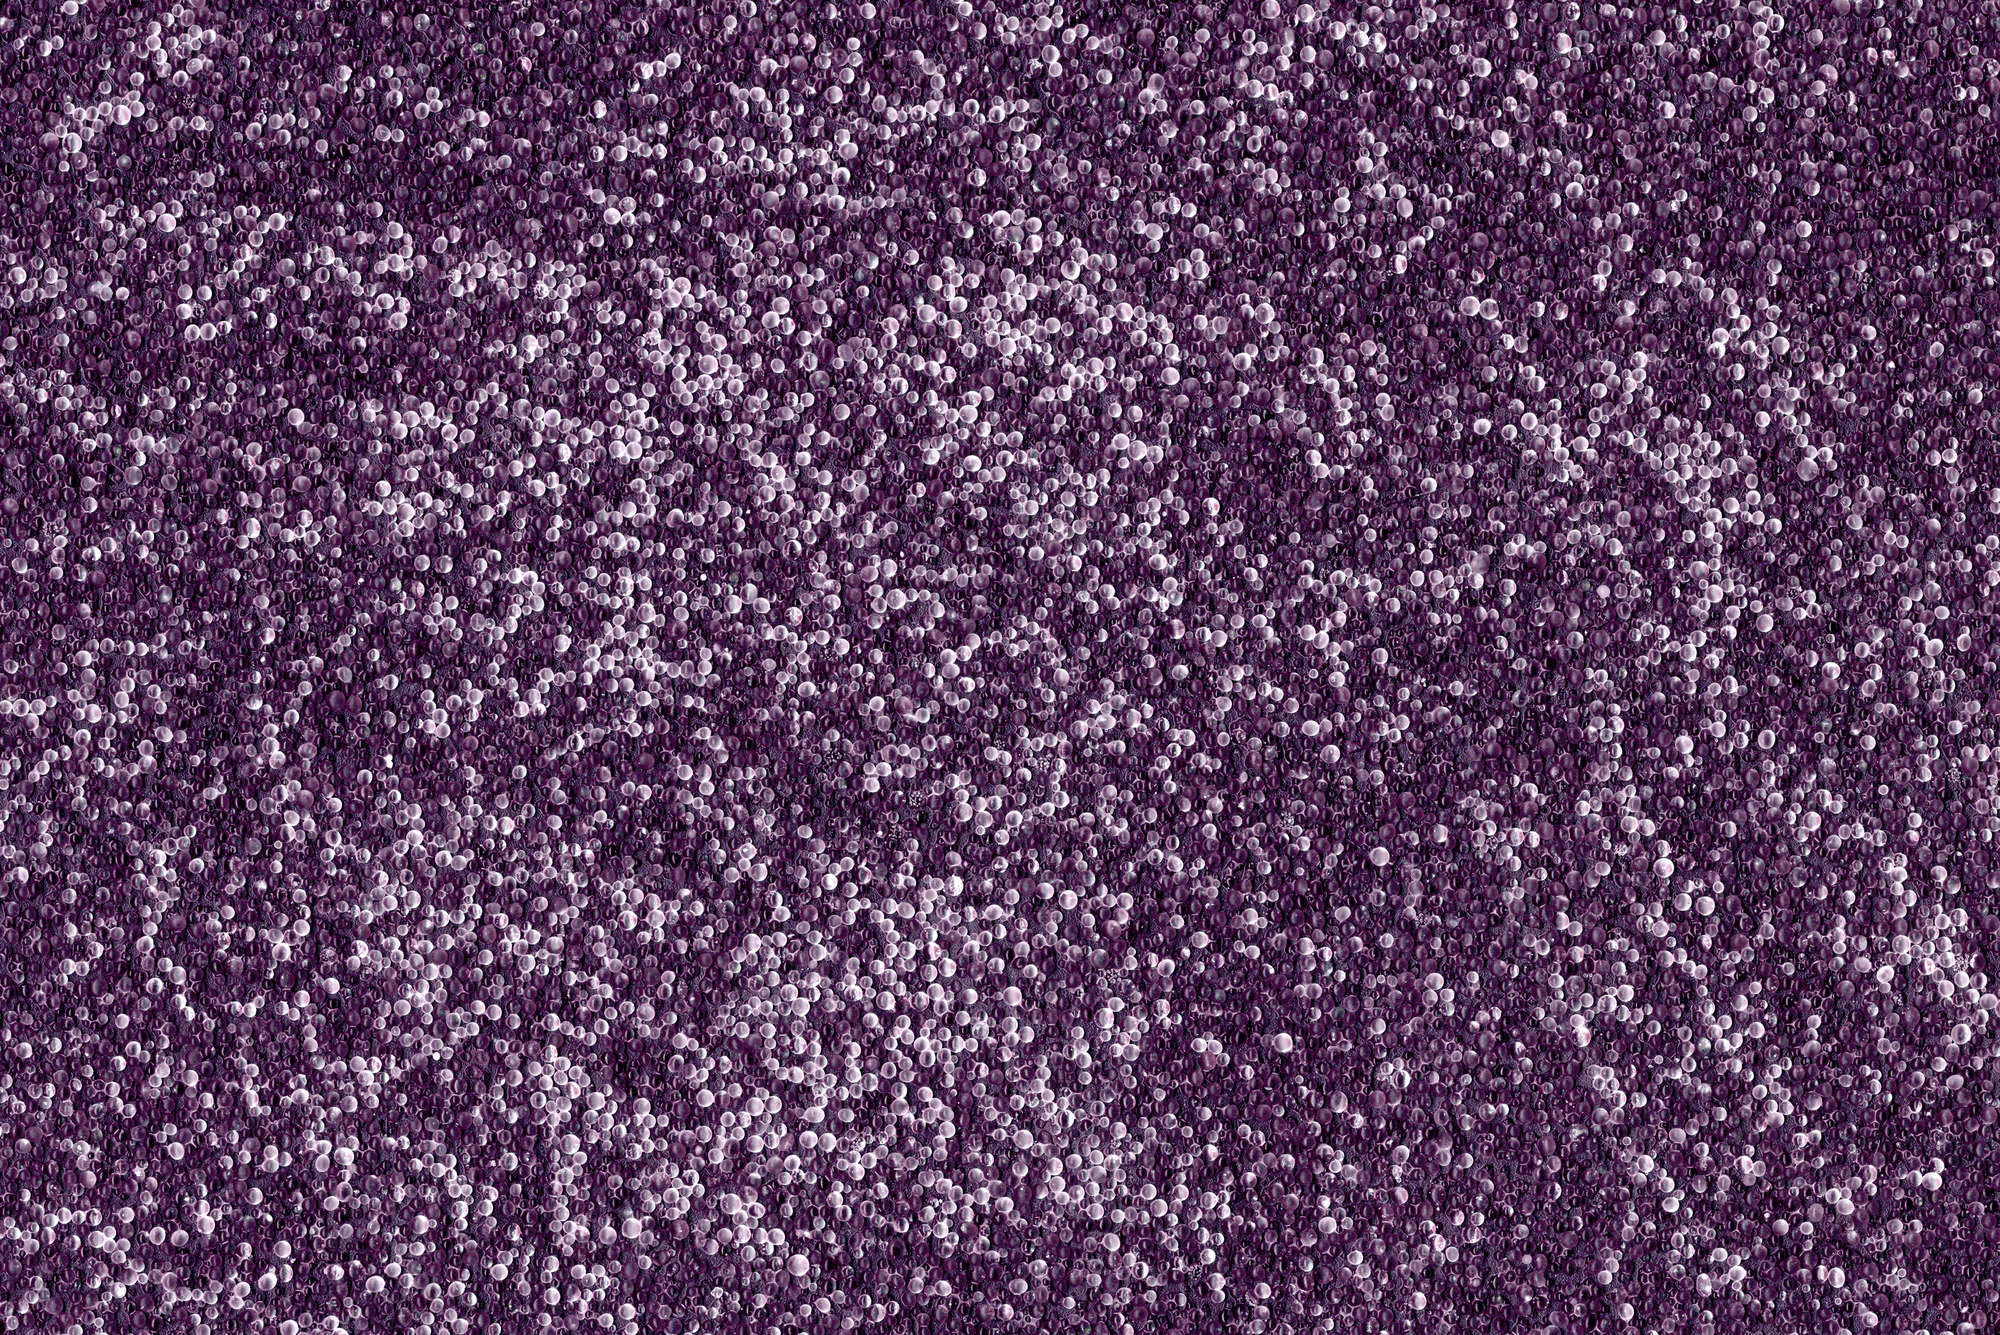             papiers peints à impression numérique nombreuses petites billes en violet - Premium intissé lisse
        